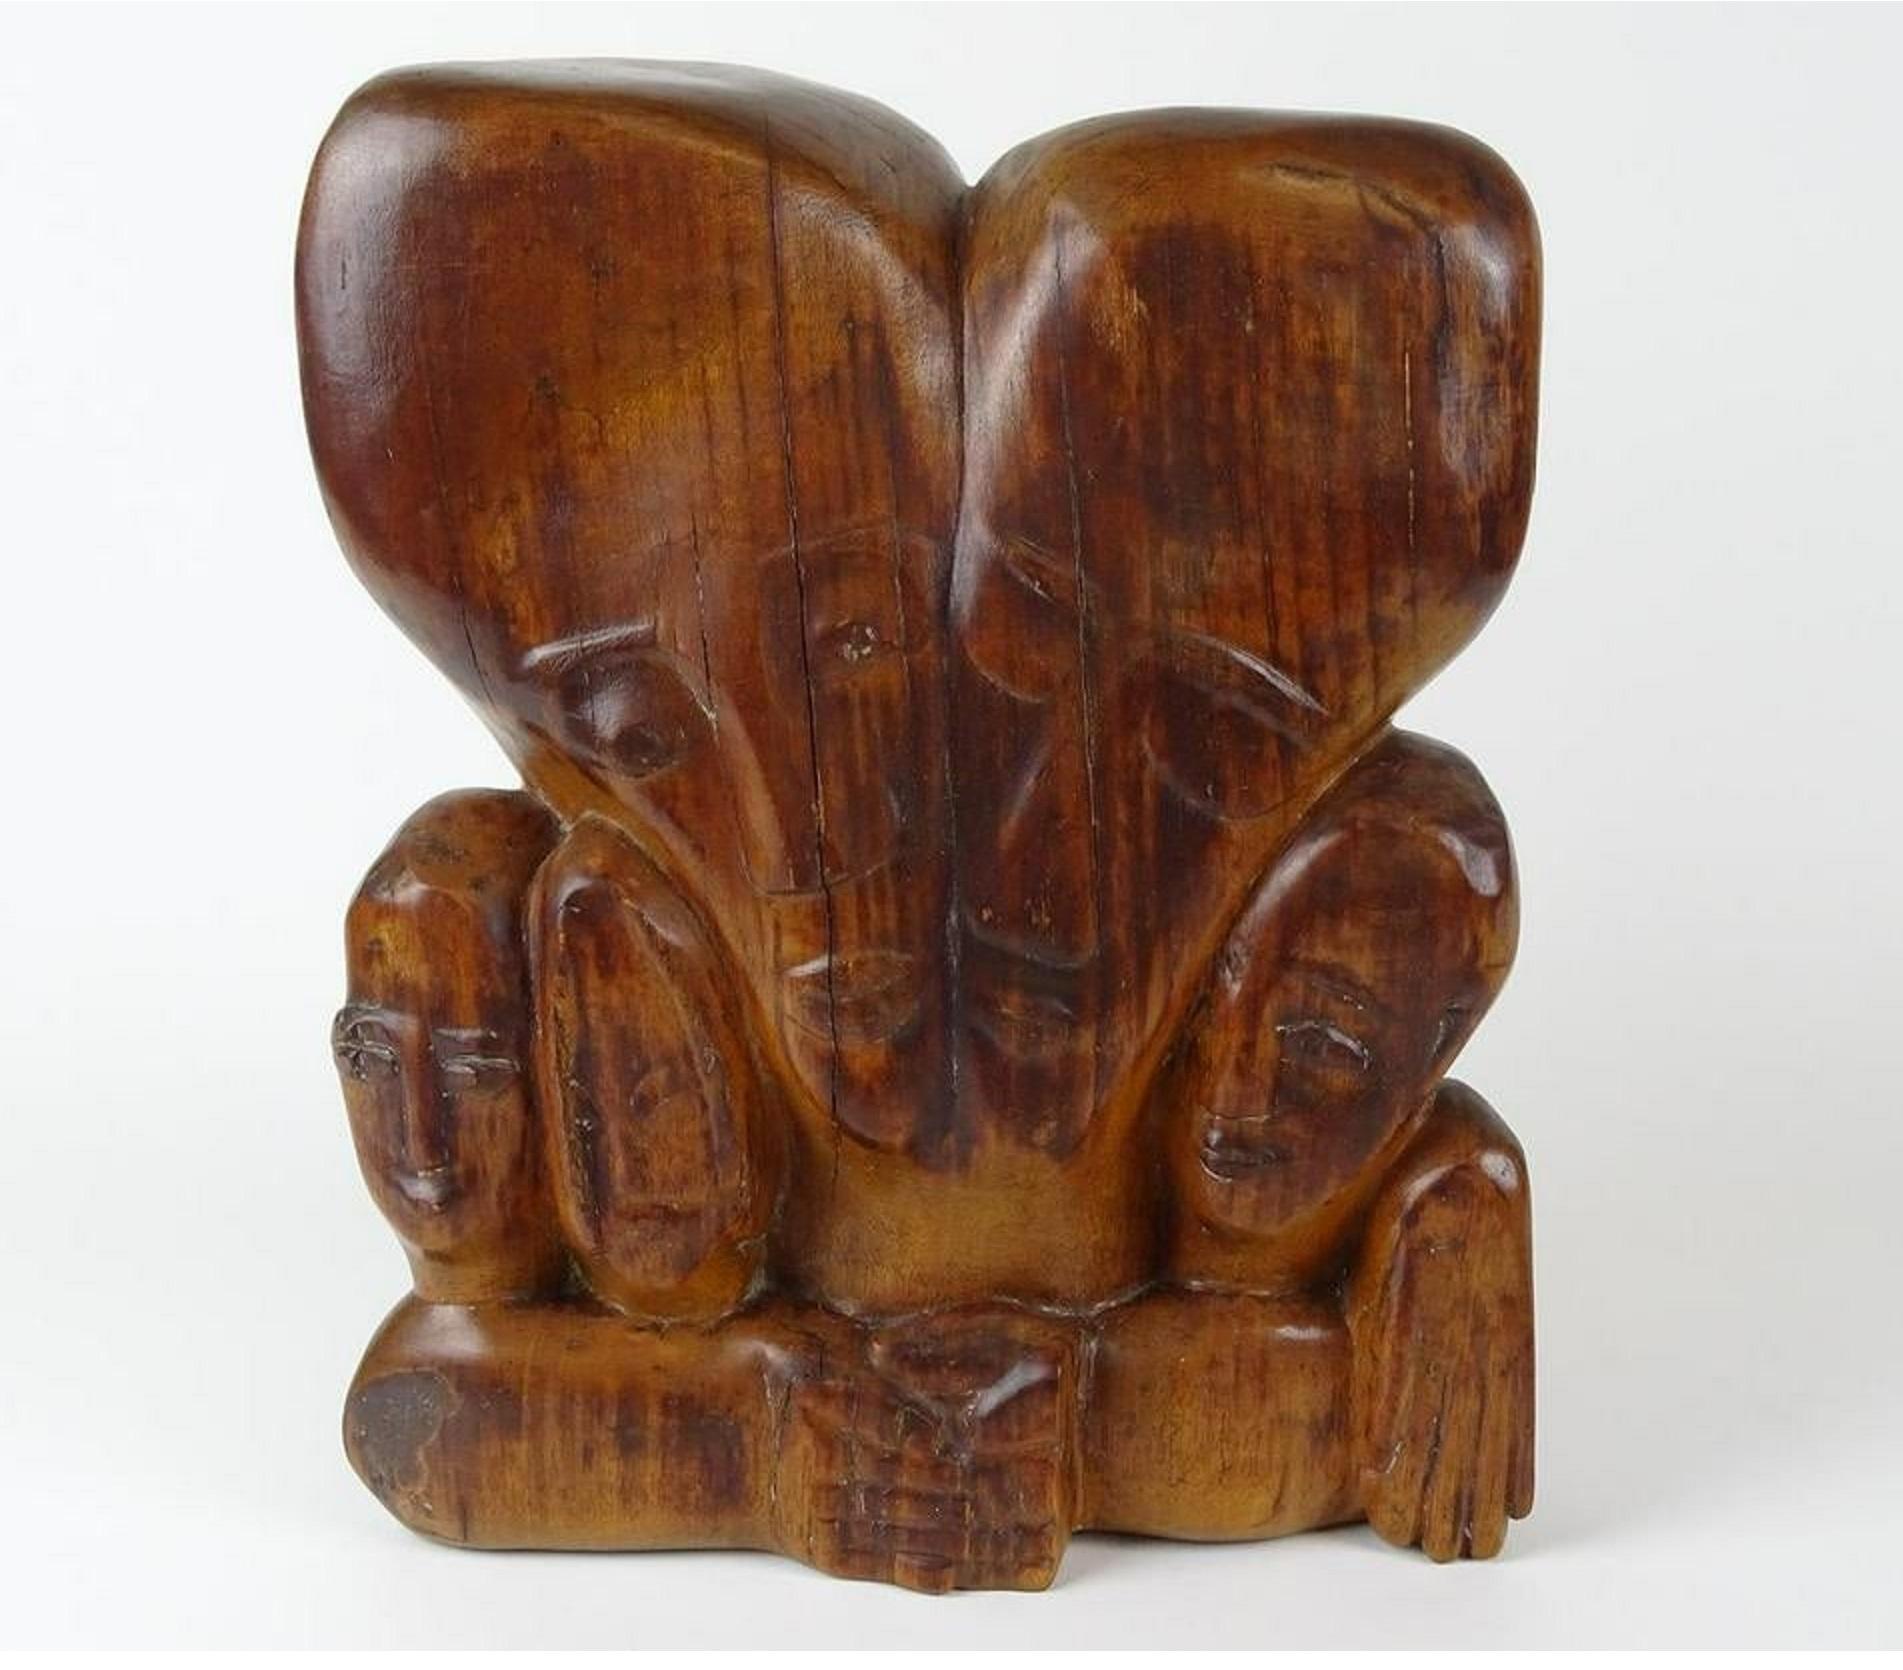 Miriam Sommerburg Figurative Sculpture – Geschnitzte Holzskulptur des deutschen Expressionismus, jüdische Frau, Refugee-Künstlerin Judaica, geschnitzt